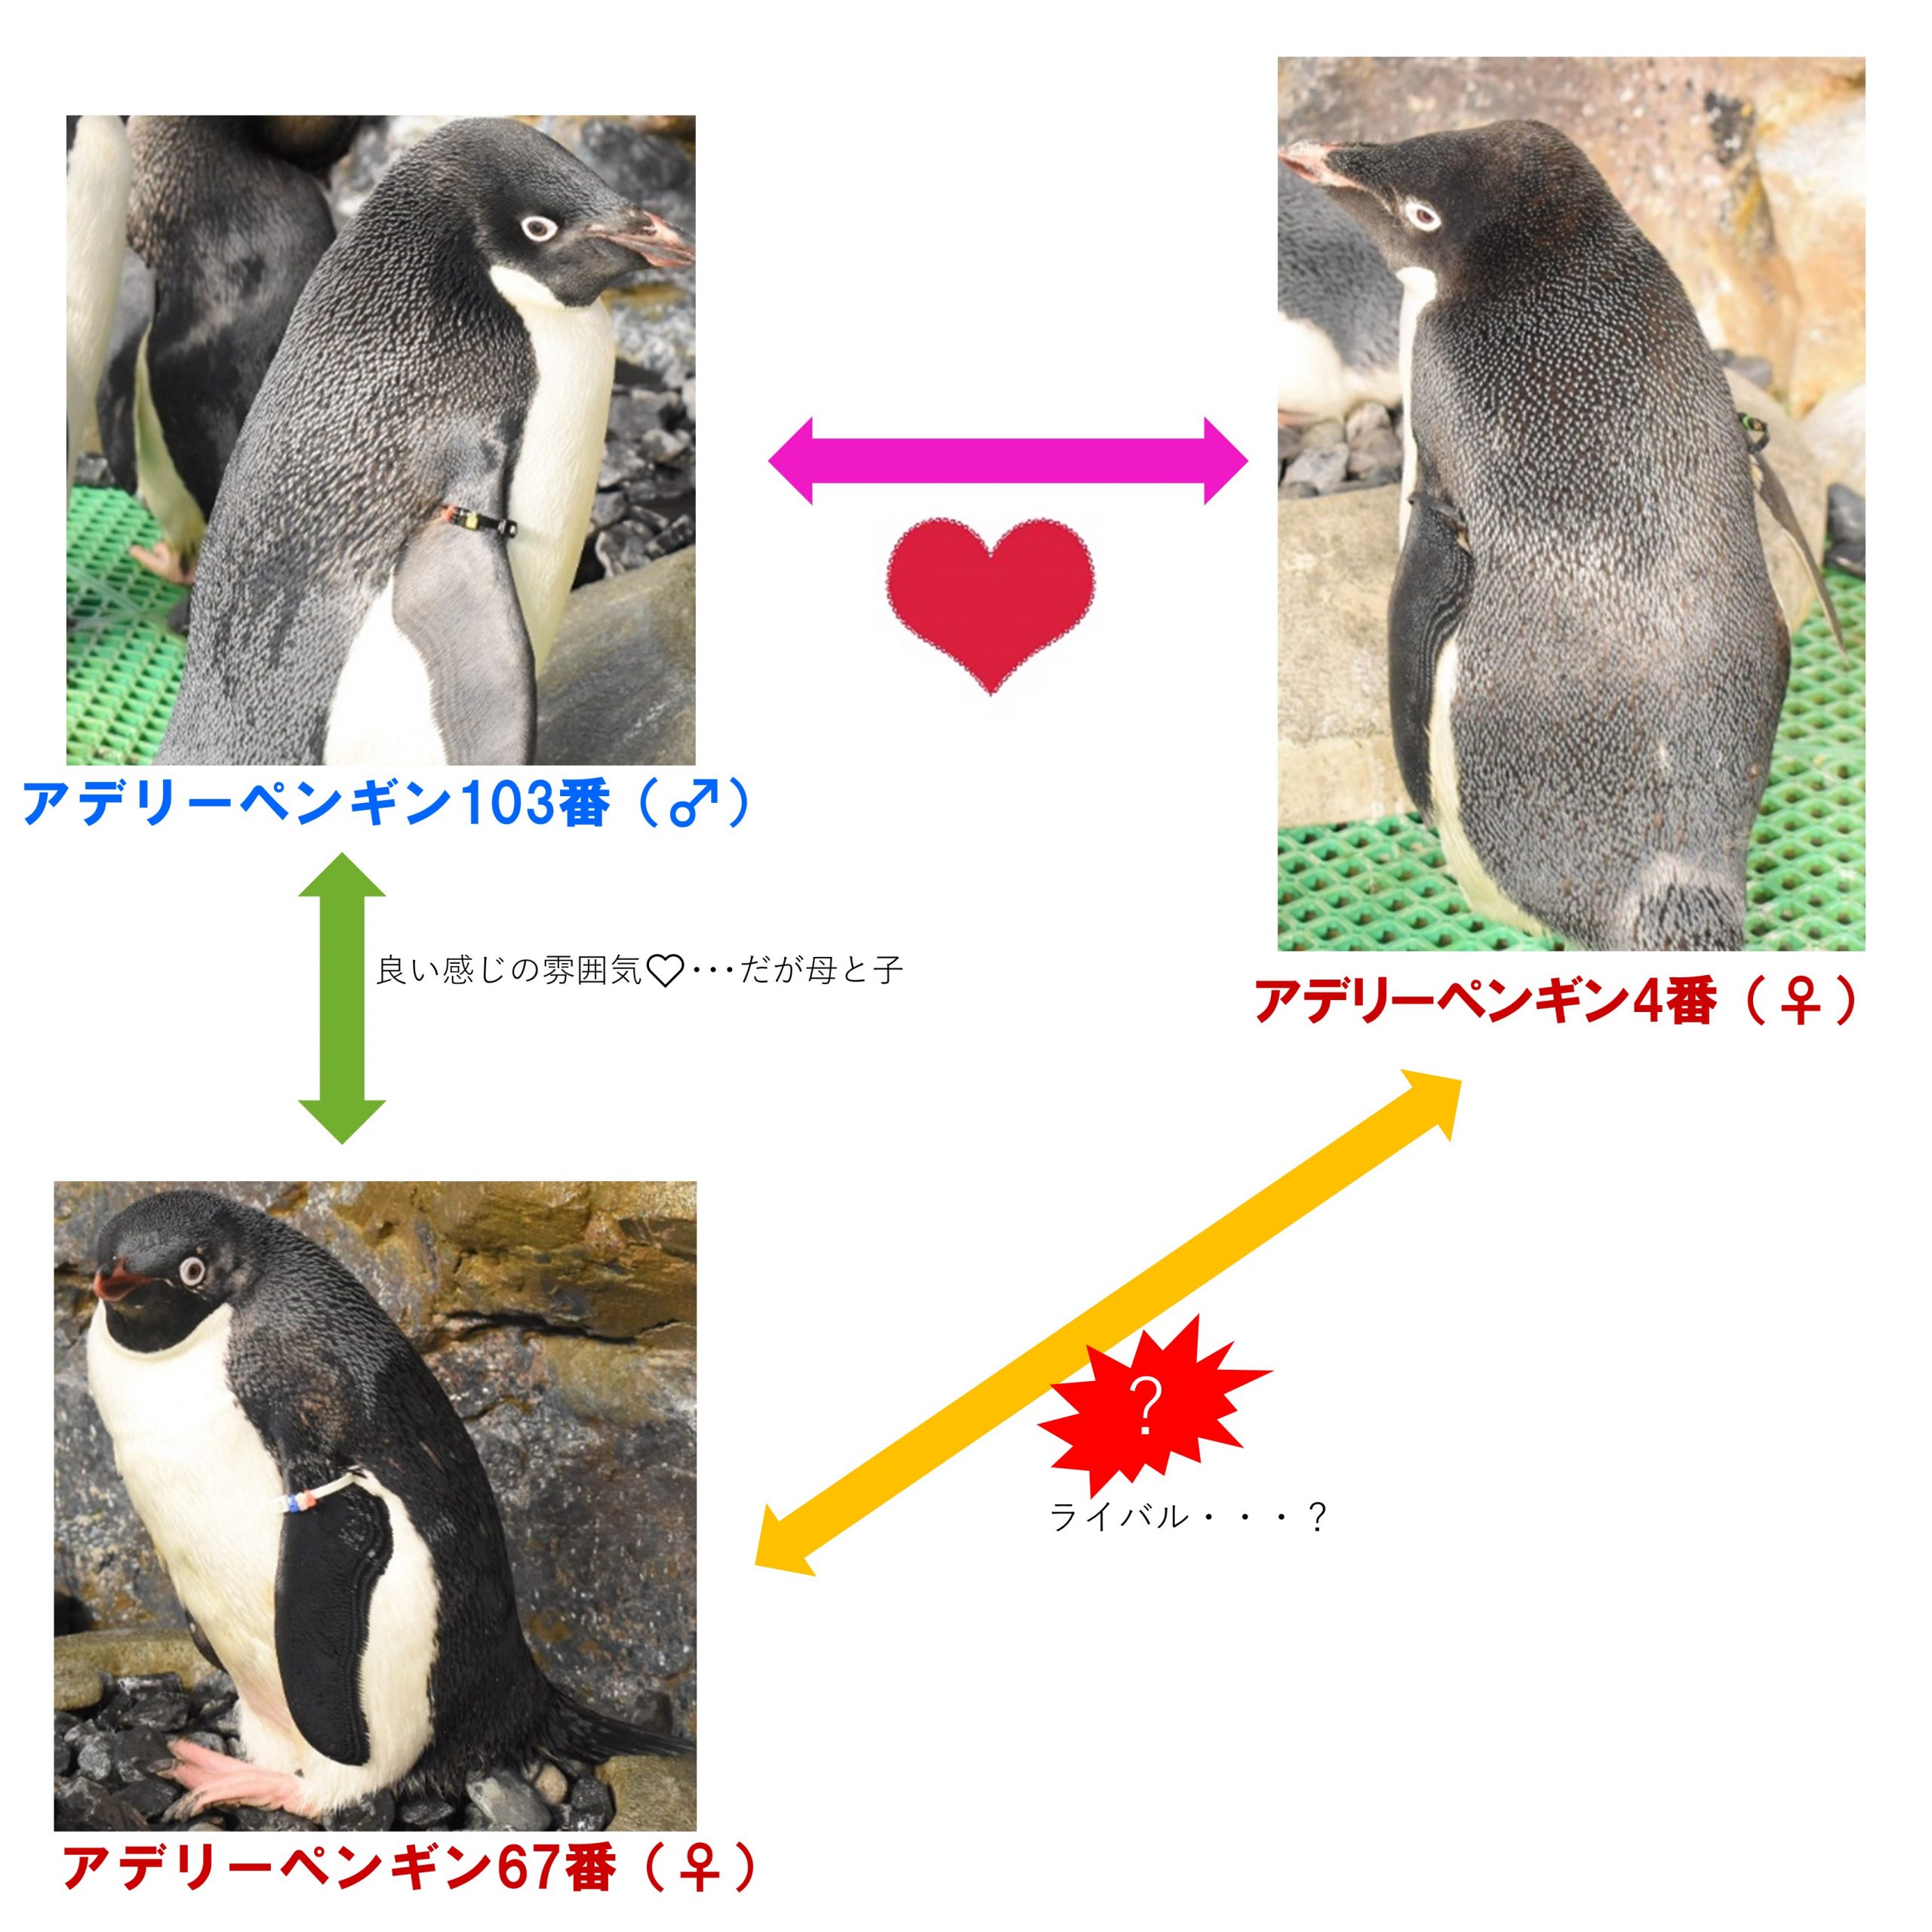 続 複雑なペンギン関係 名古屋港水族館ホームページ 公式